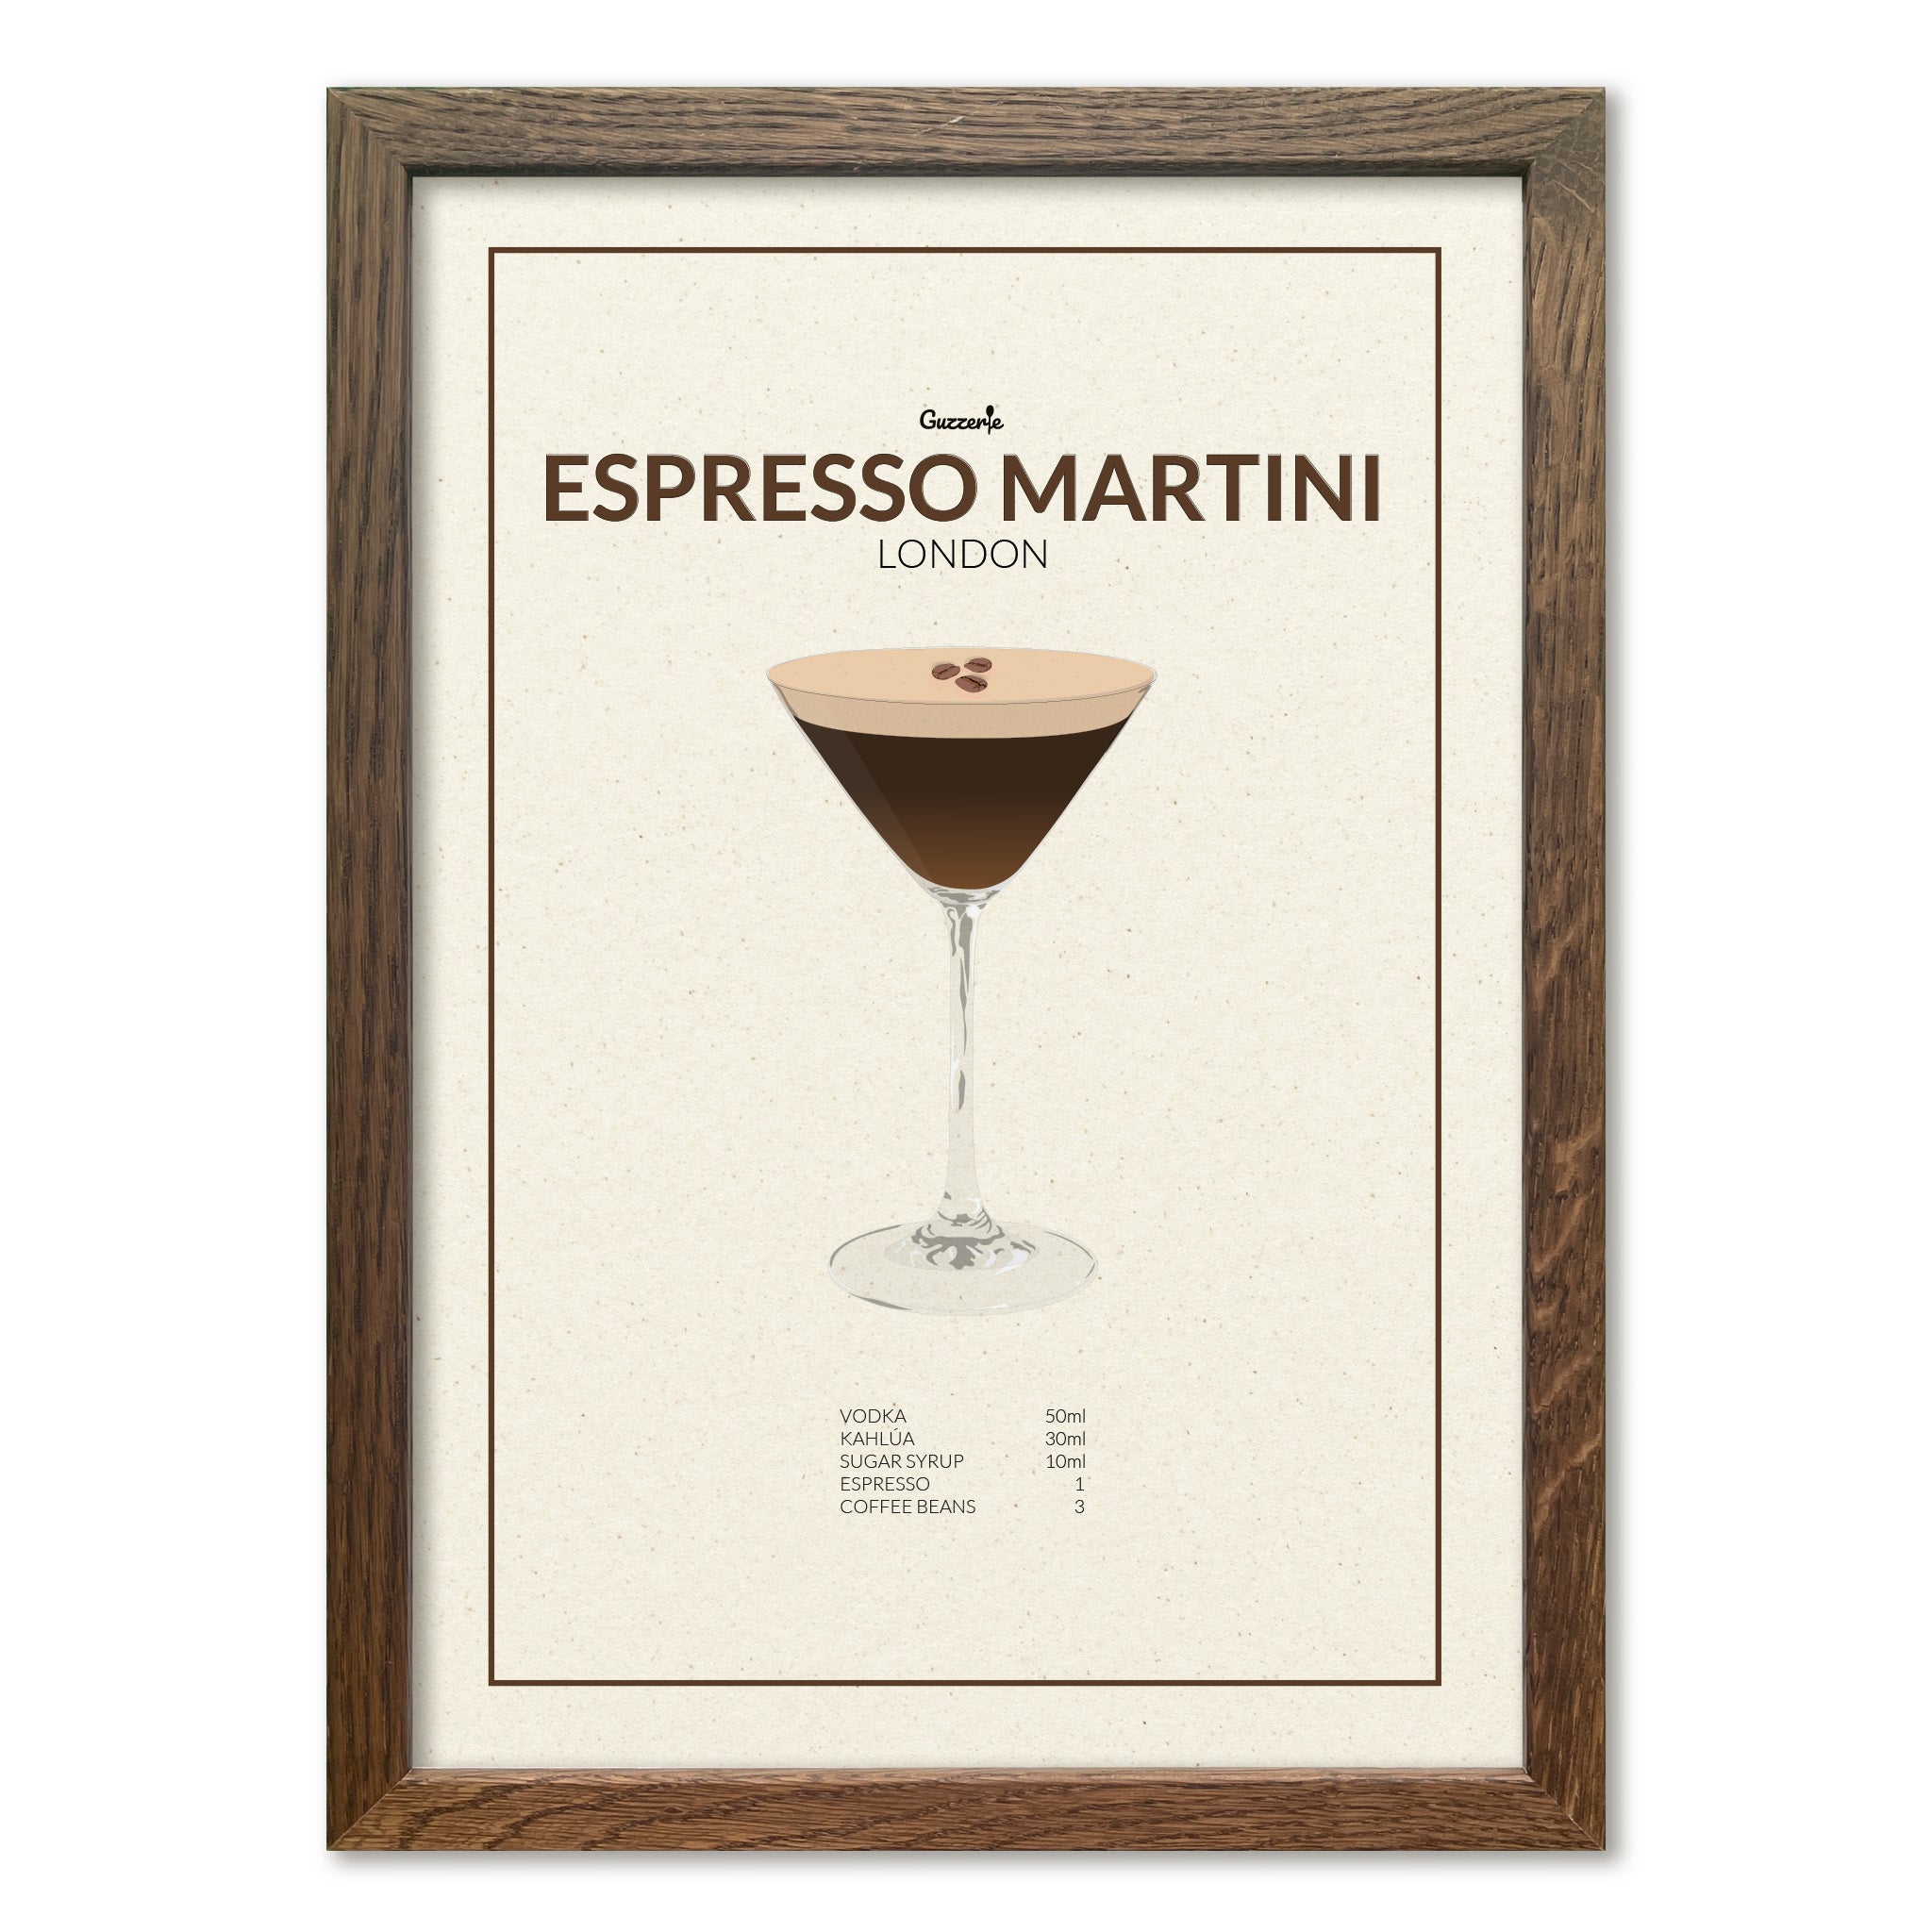 Iconic Poster of Espresso Martini | Guzzerie